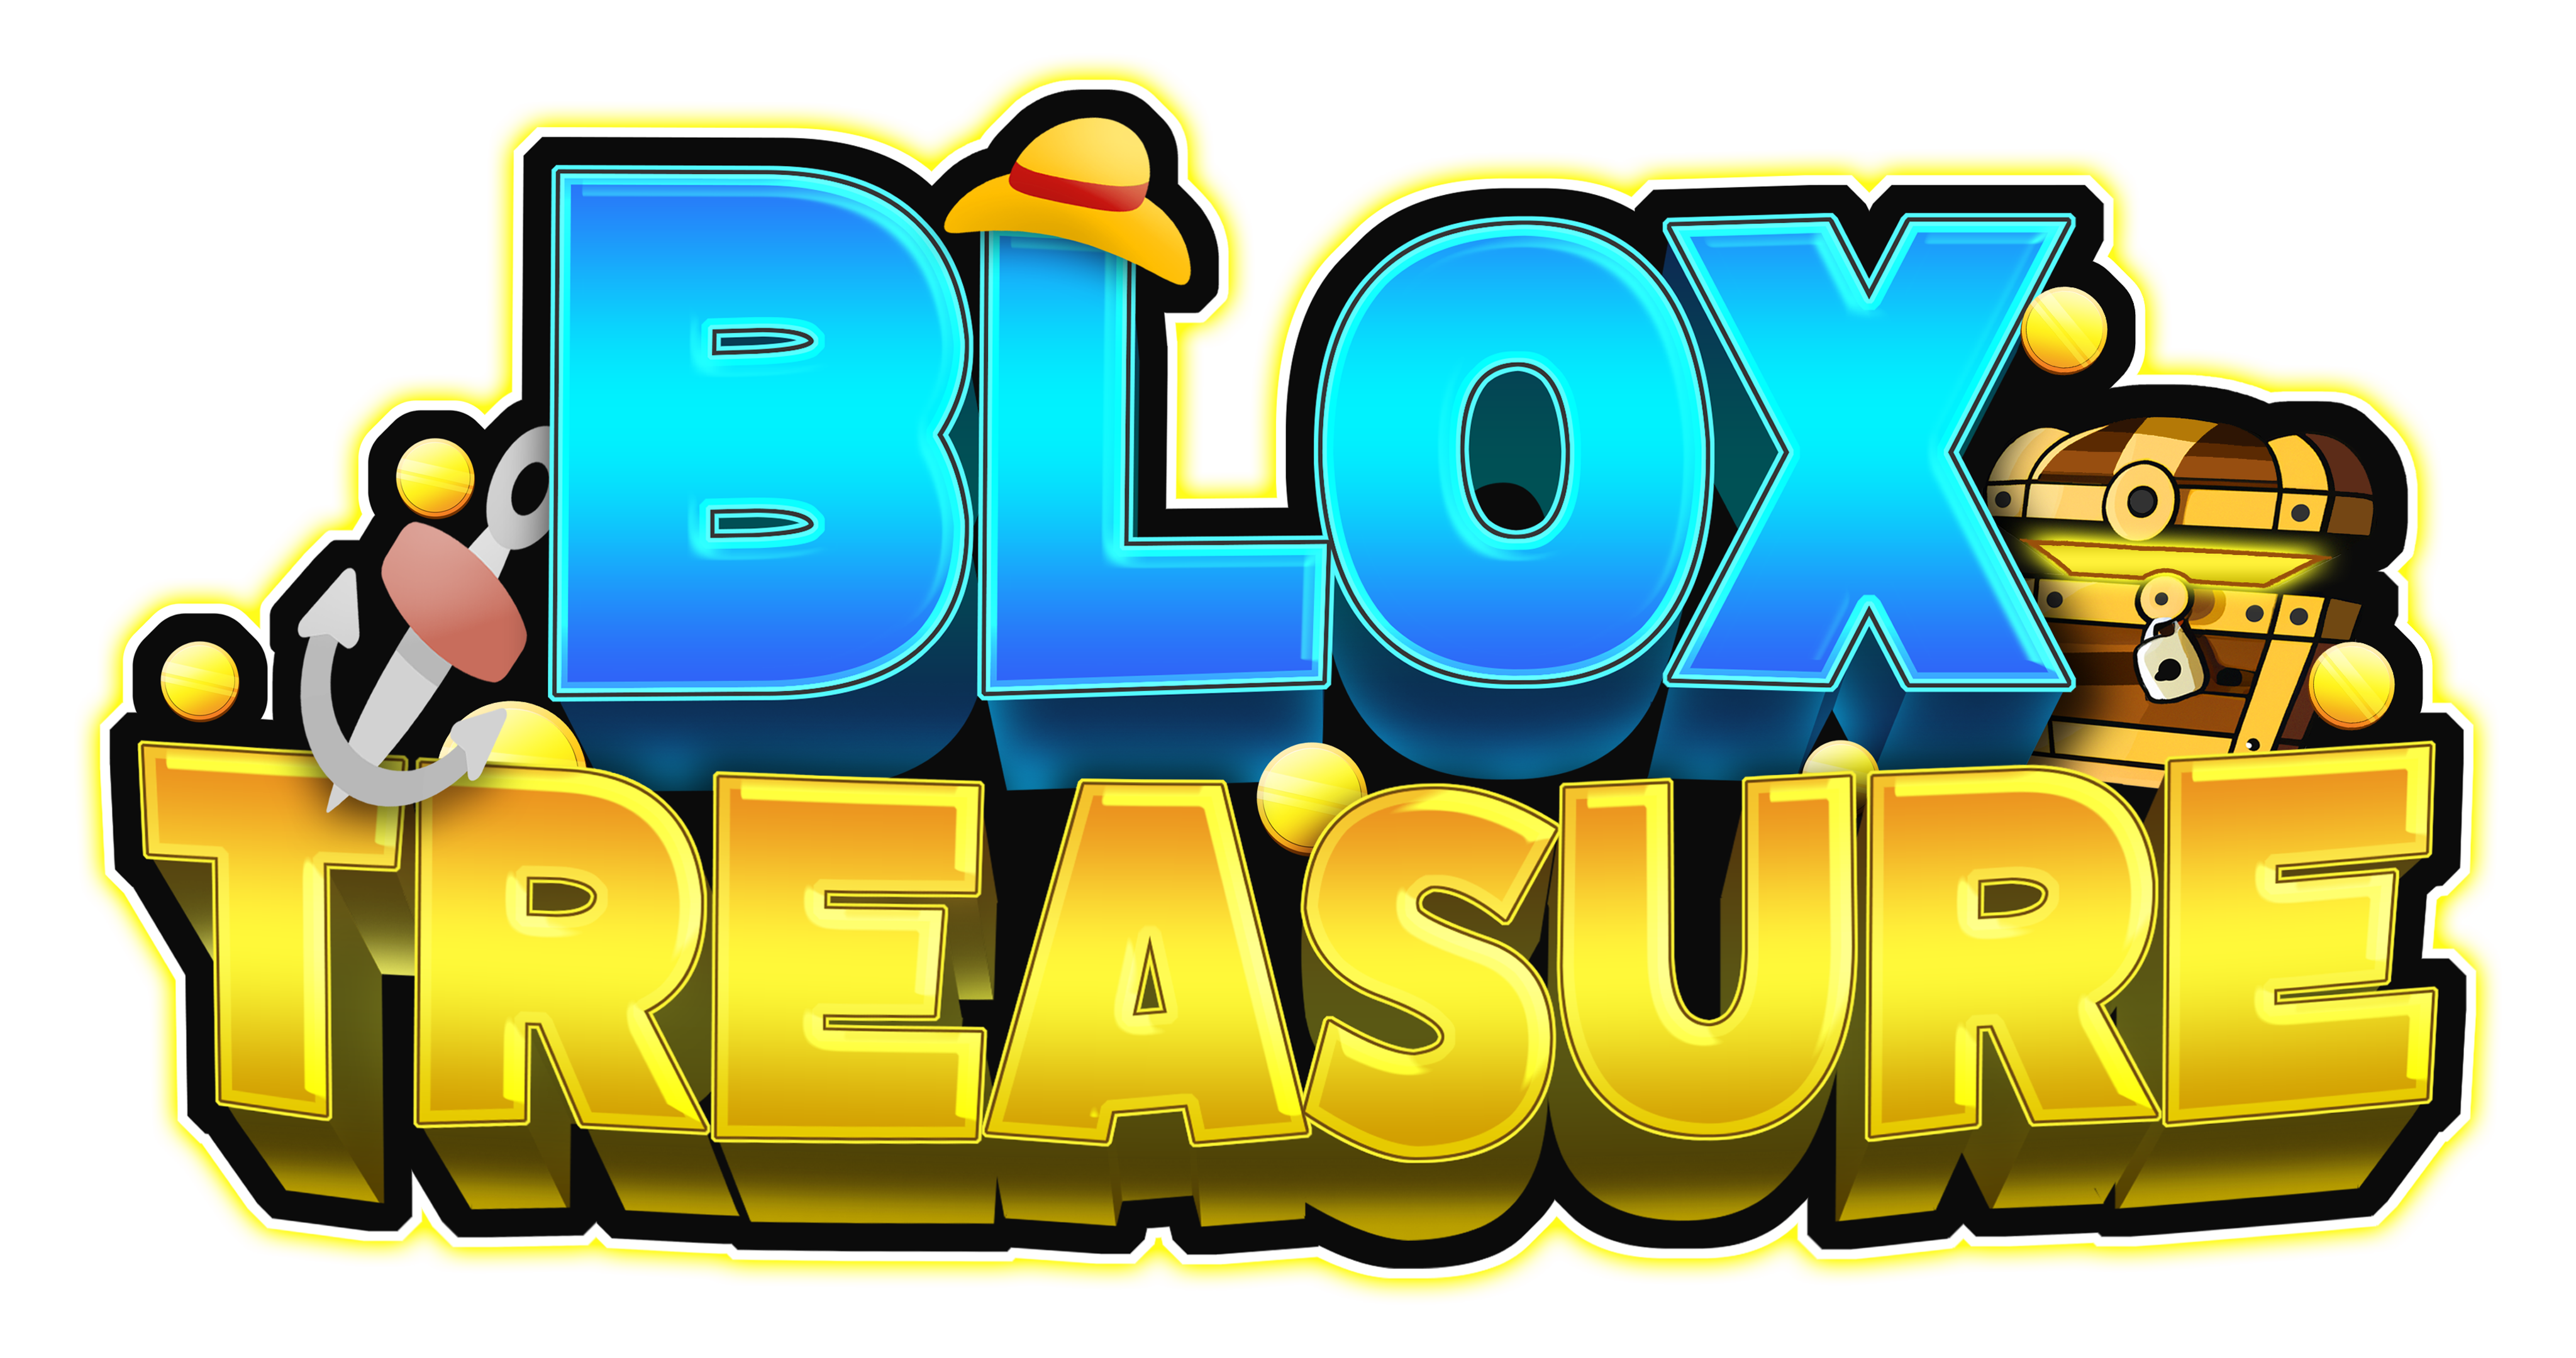 Blox Treasure